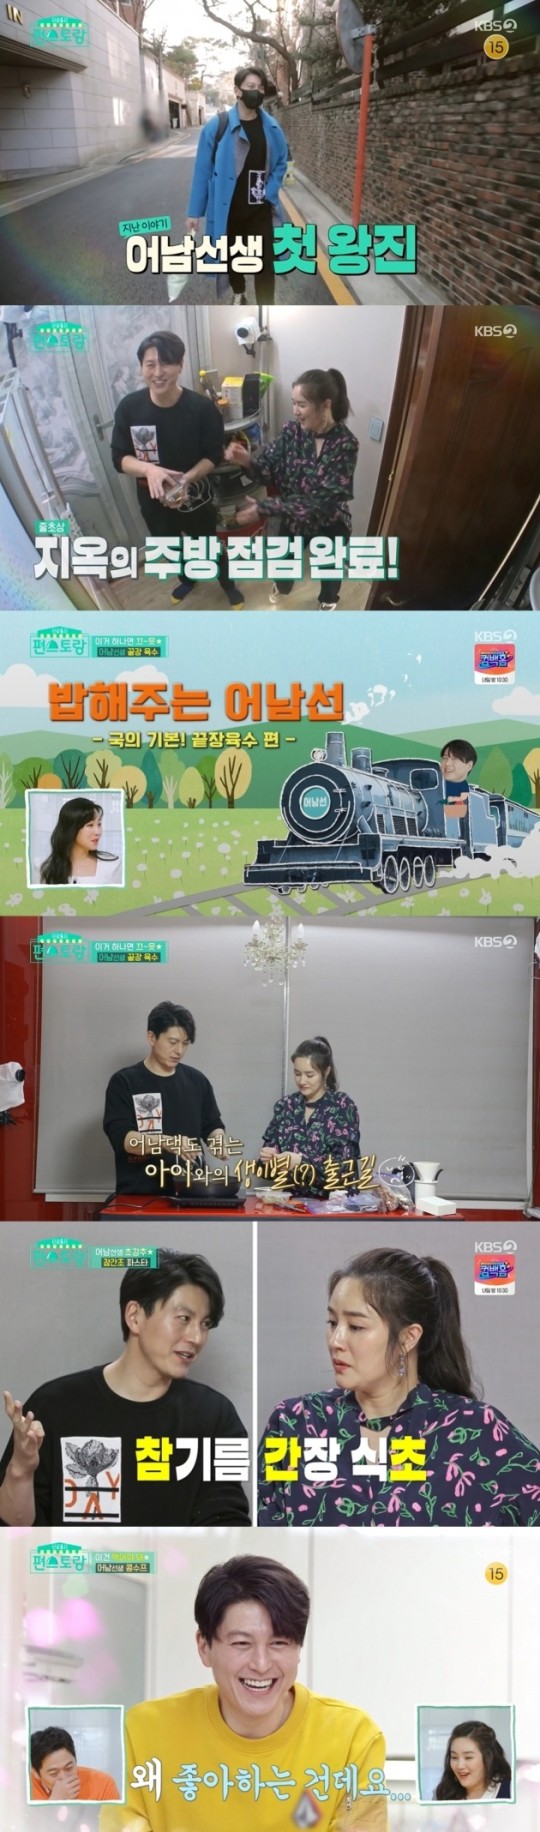 KBS2 ‘신상출시 편스토랑’ 방송 화면